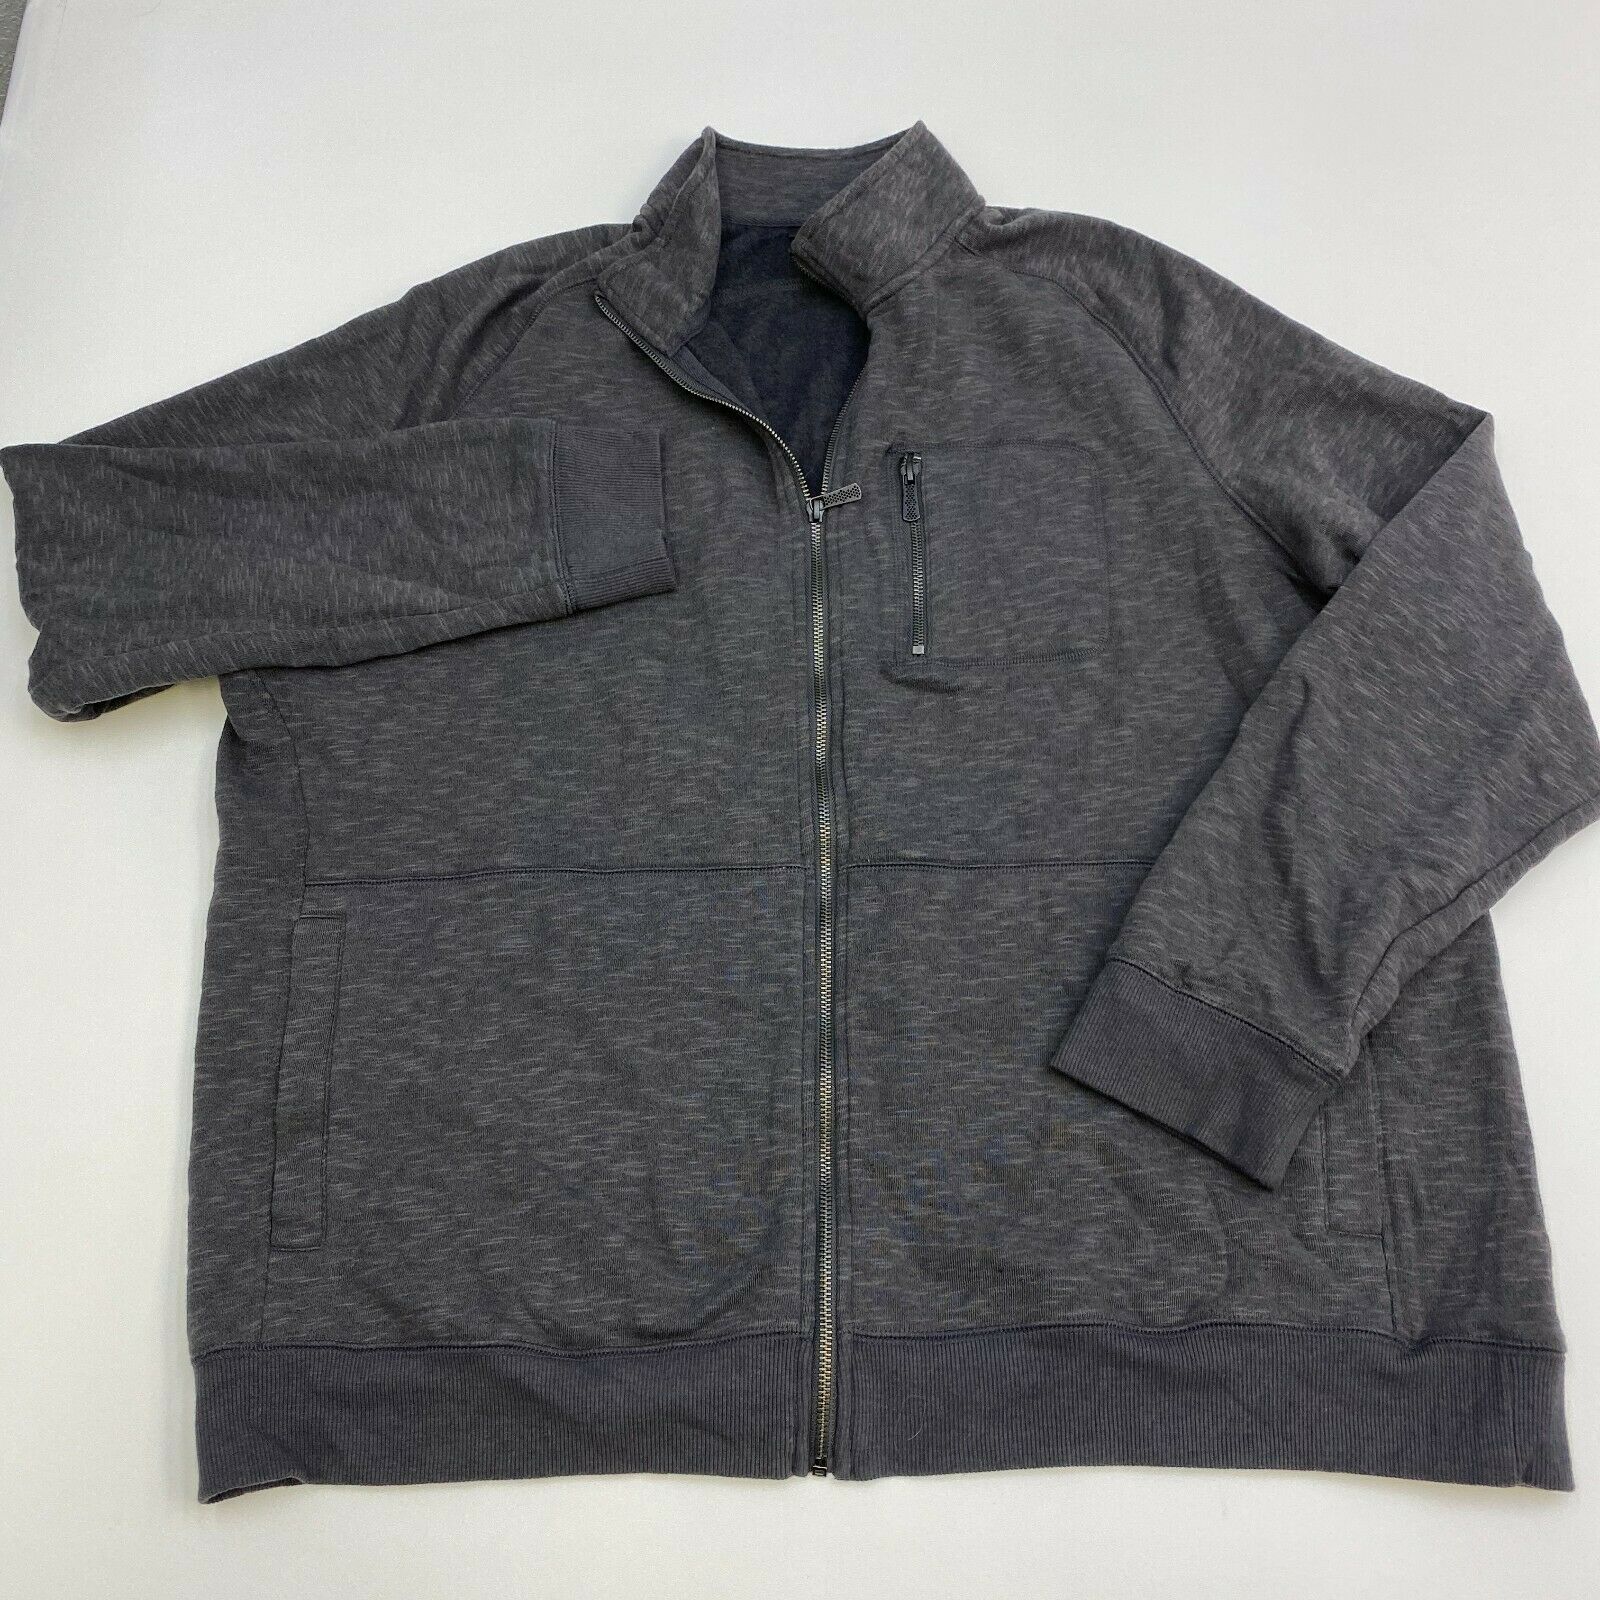 Apt 9 Full Zip Jacket Mens XXL Gray Long Sleeve Casual - Coats & Jackets